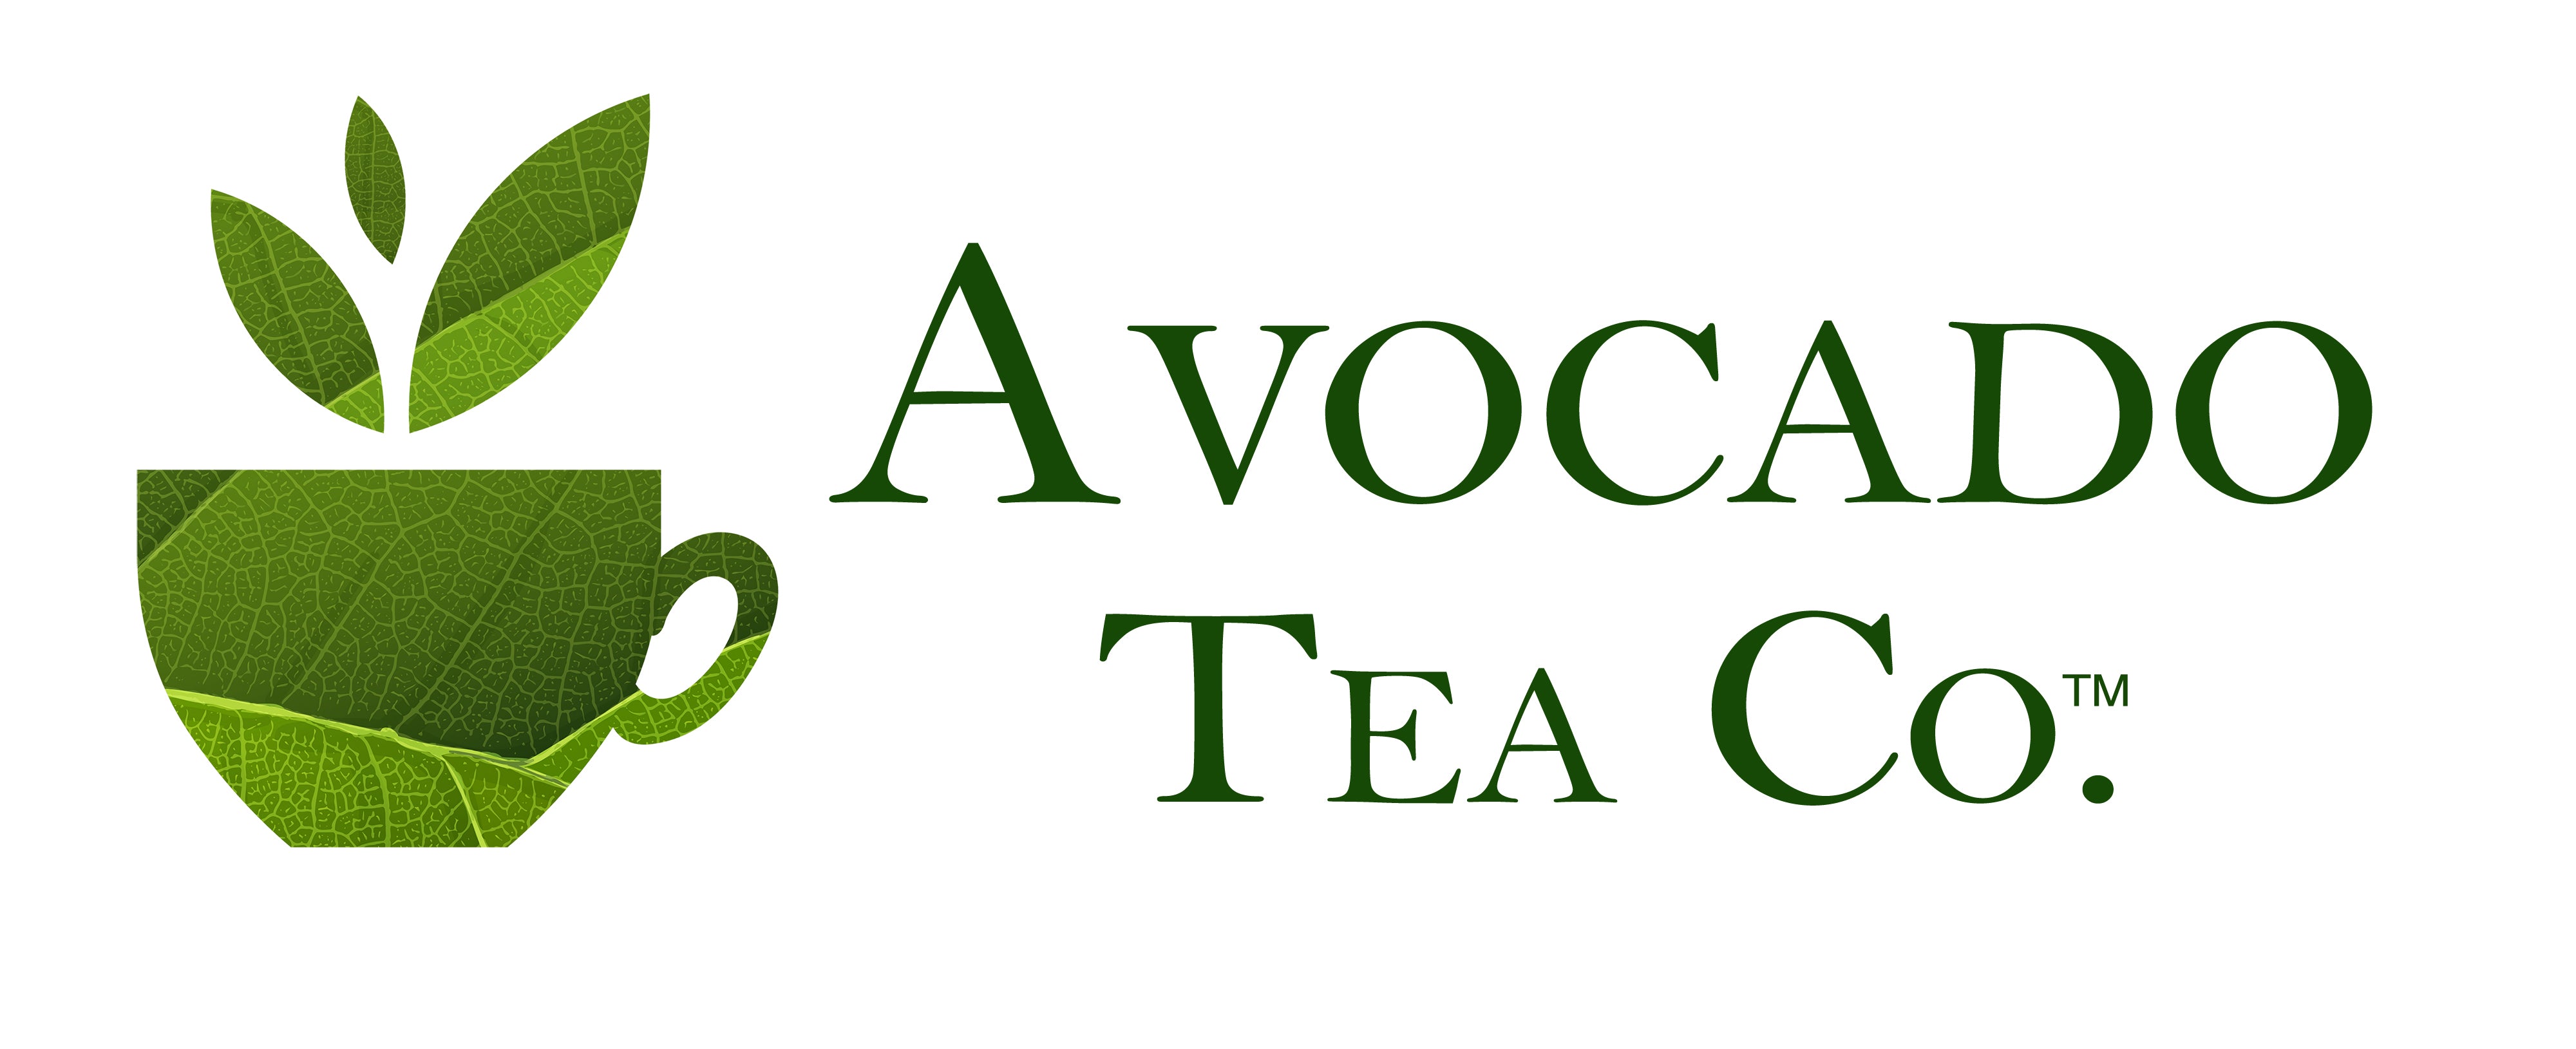 Avocado Tea Co.